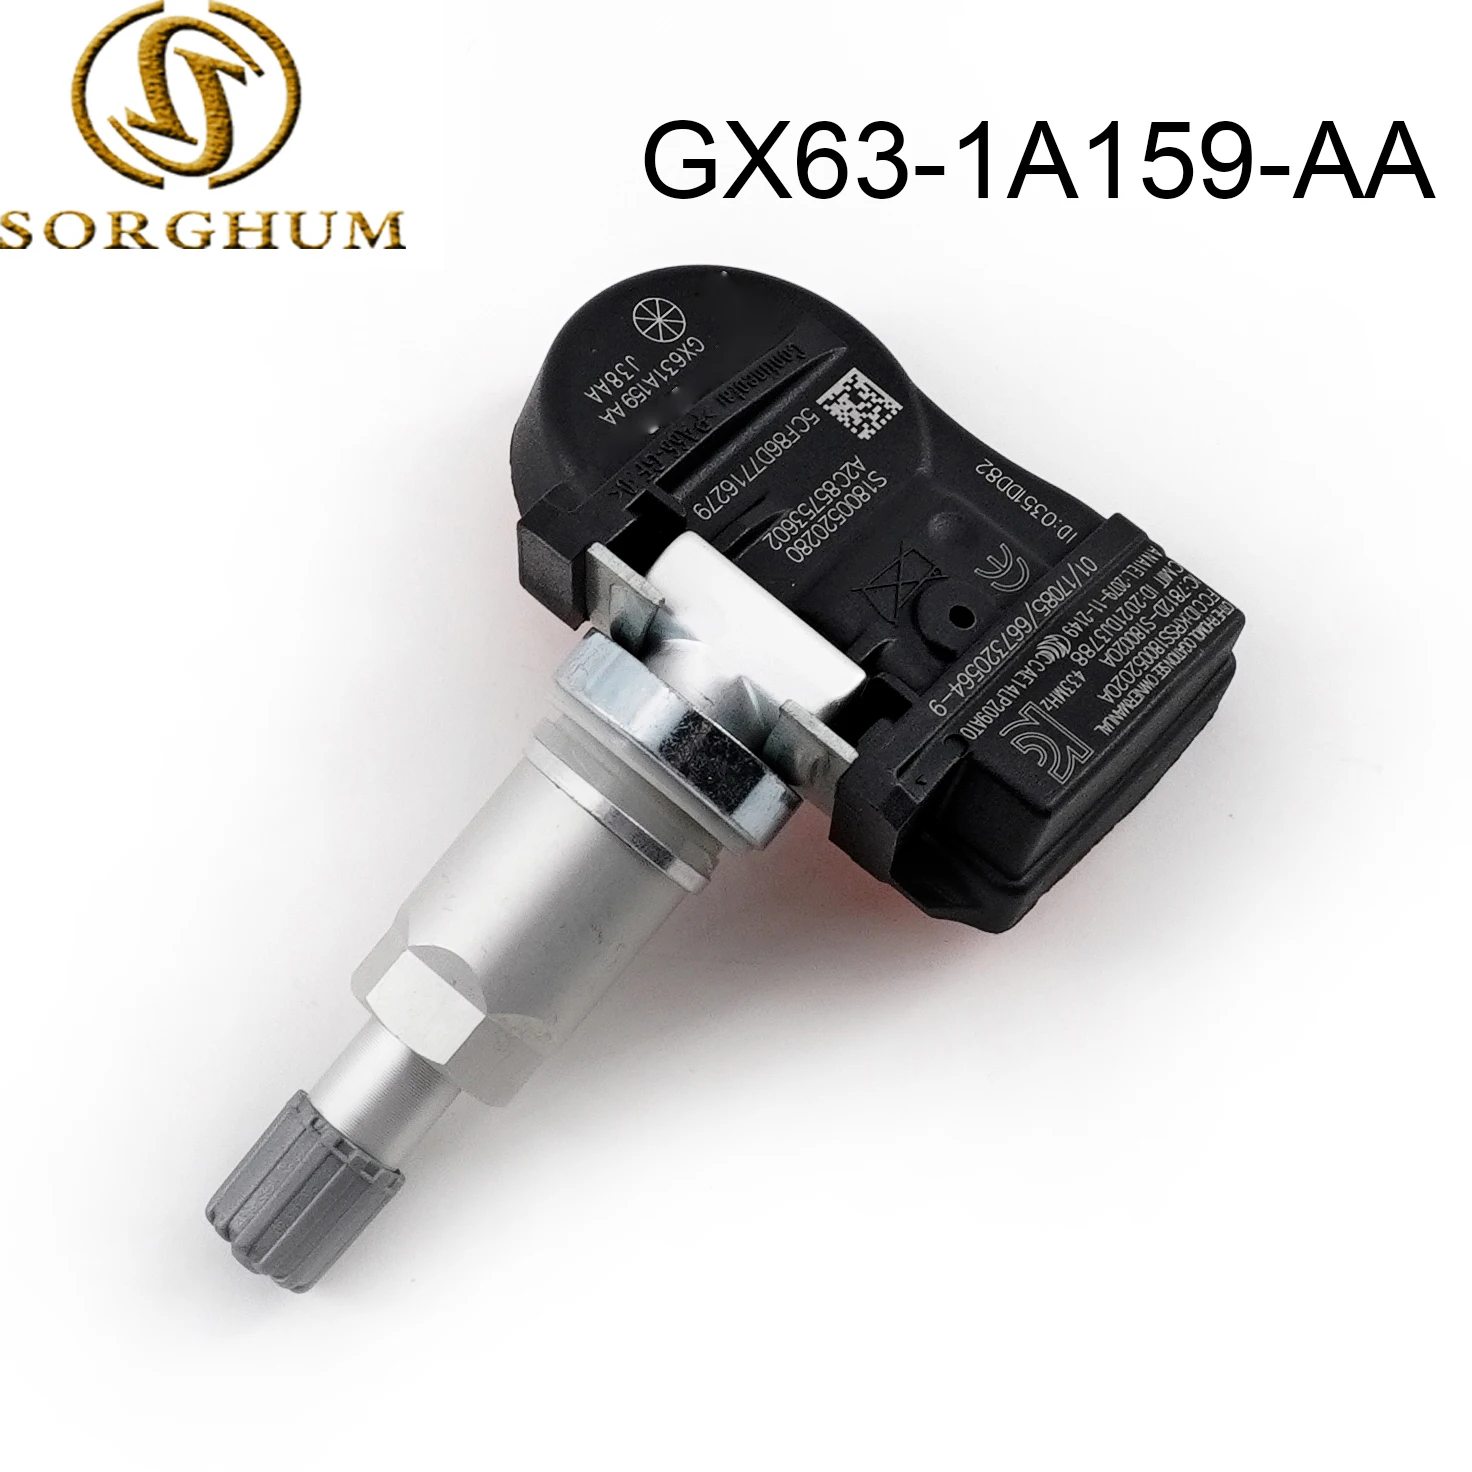 

GX63-1A159-AA Автомобильный датчик контроля давления в шинах TPMS 433 МГц для Land Rover Jaguar Discovery GX631A159AA